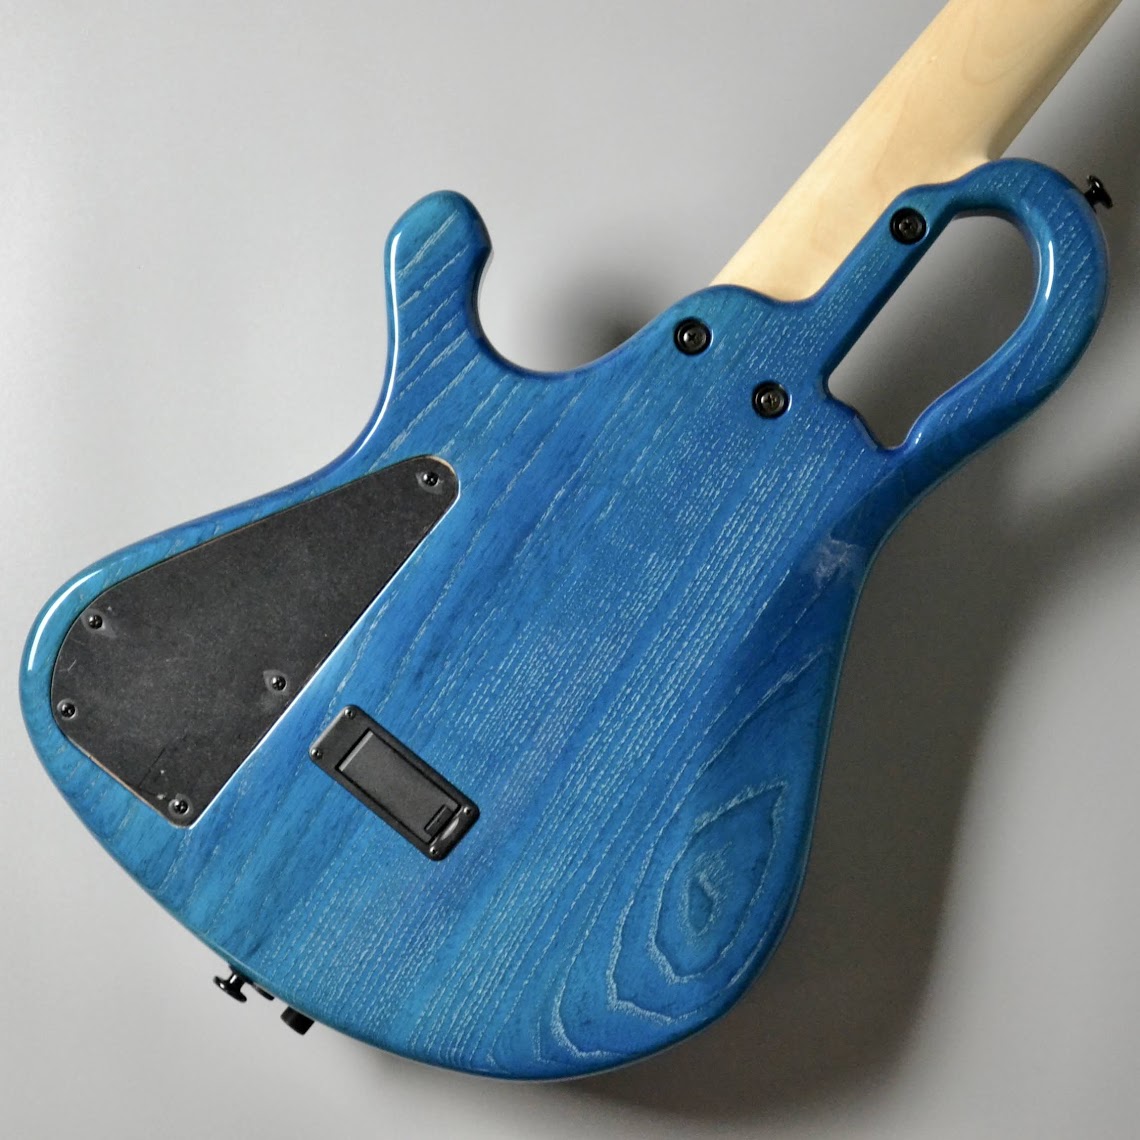 saitias guitars Lorentz 4 Custom Blue/White line【2.79kg】 サイ 